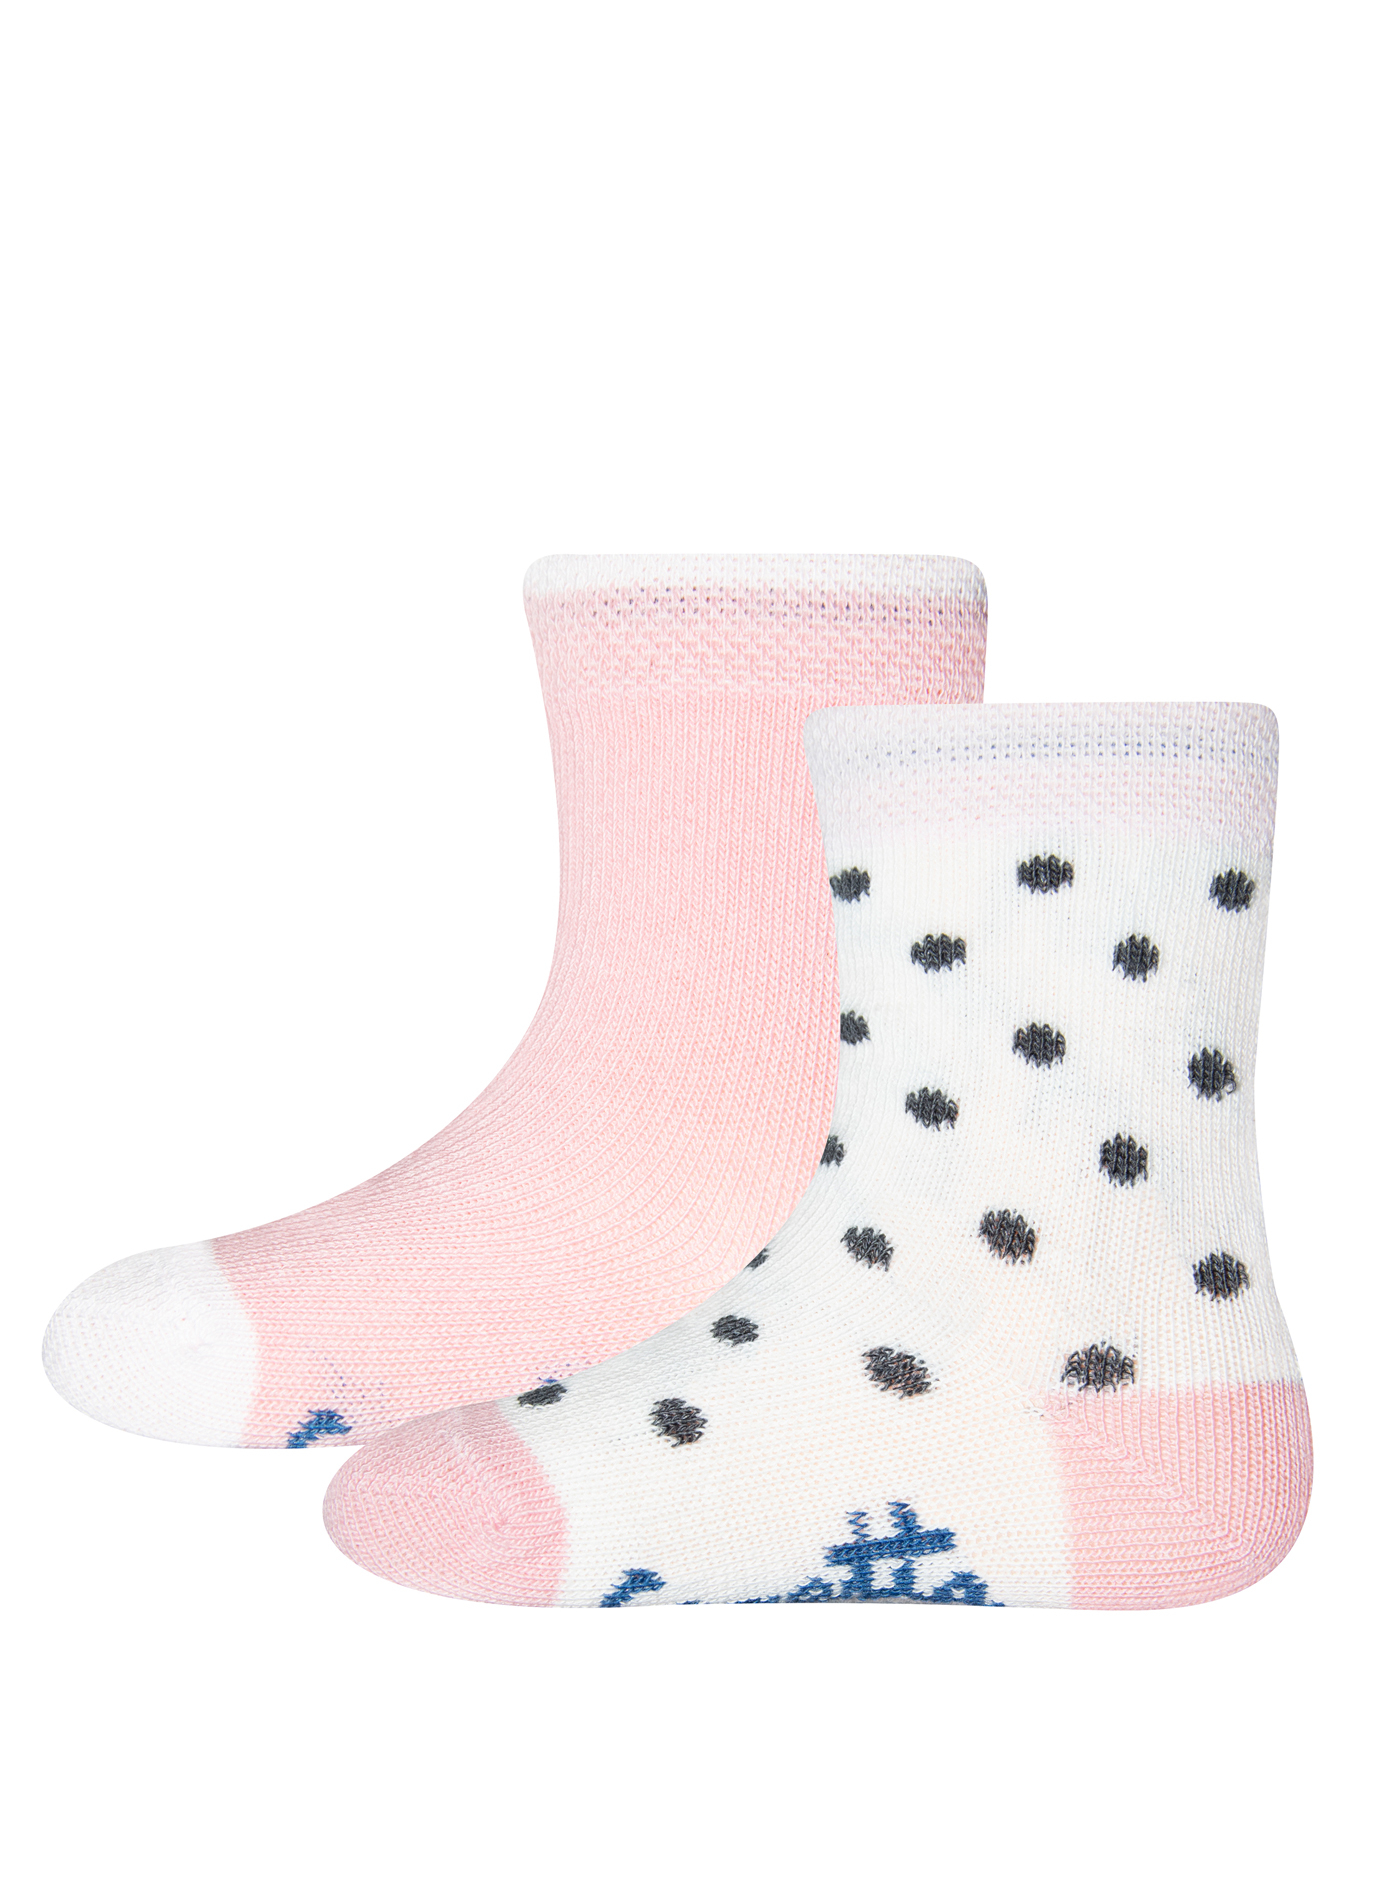 Mädchen-Socken (Doppelpack) Rosa und Punkte